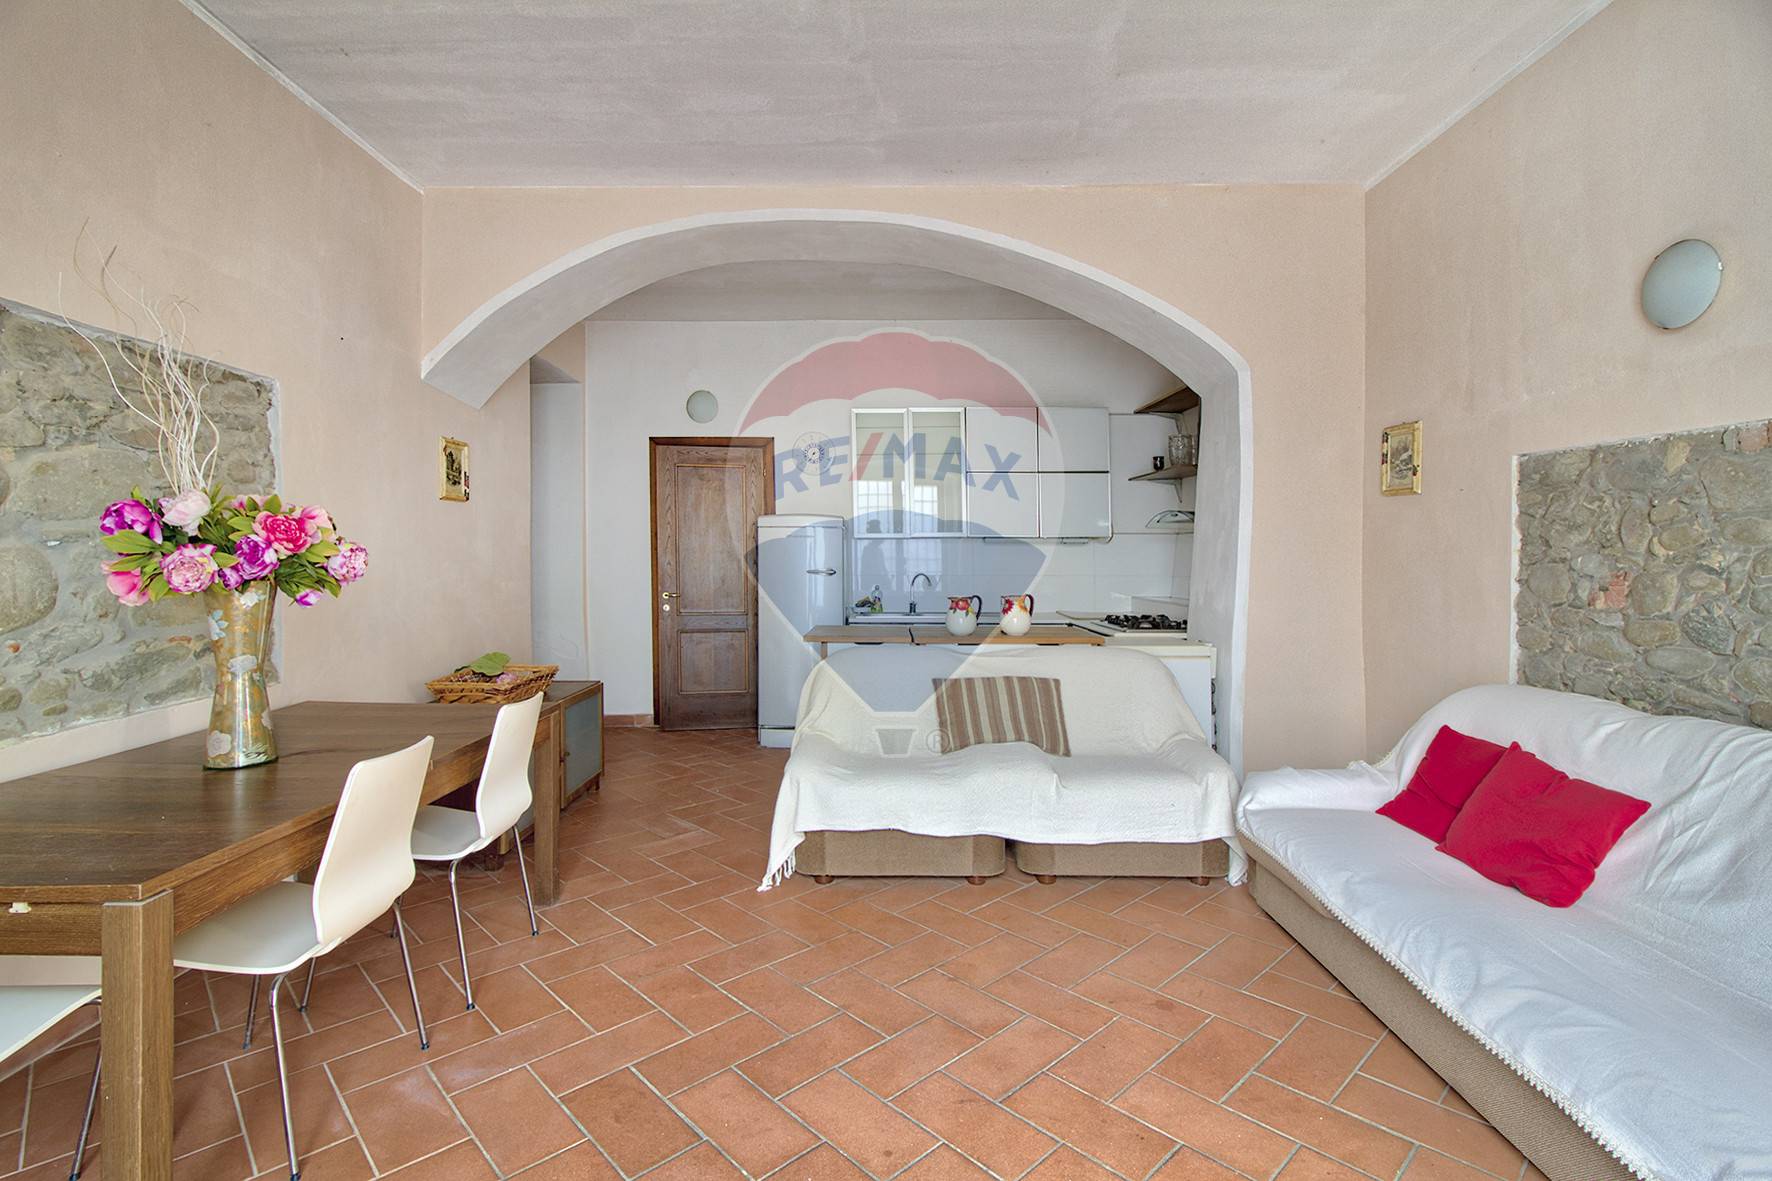 Villa Bifamiliare in vendita a Castelfranco Piandiscò, 3 locali, zona Località: Vaggio, prezzo € 210.000 | CambioCasa.it